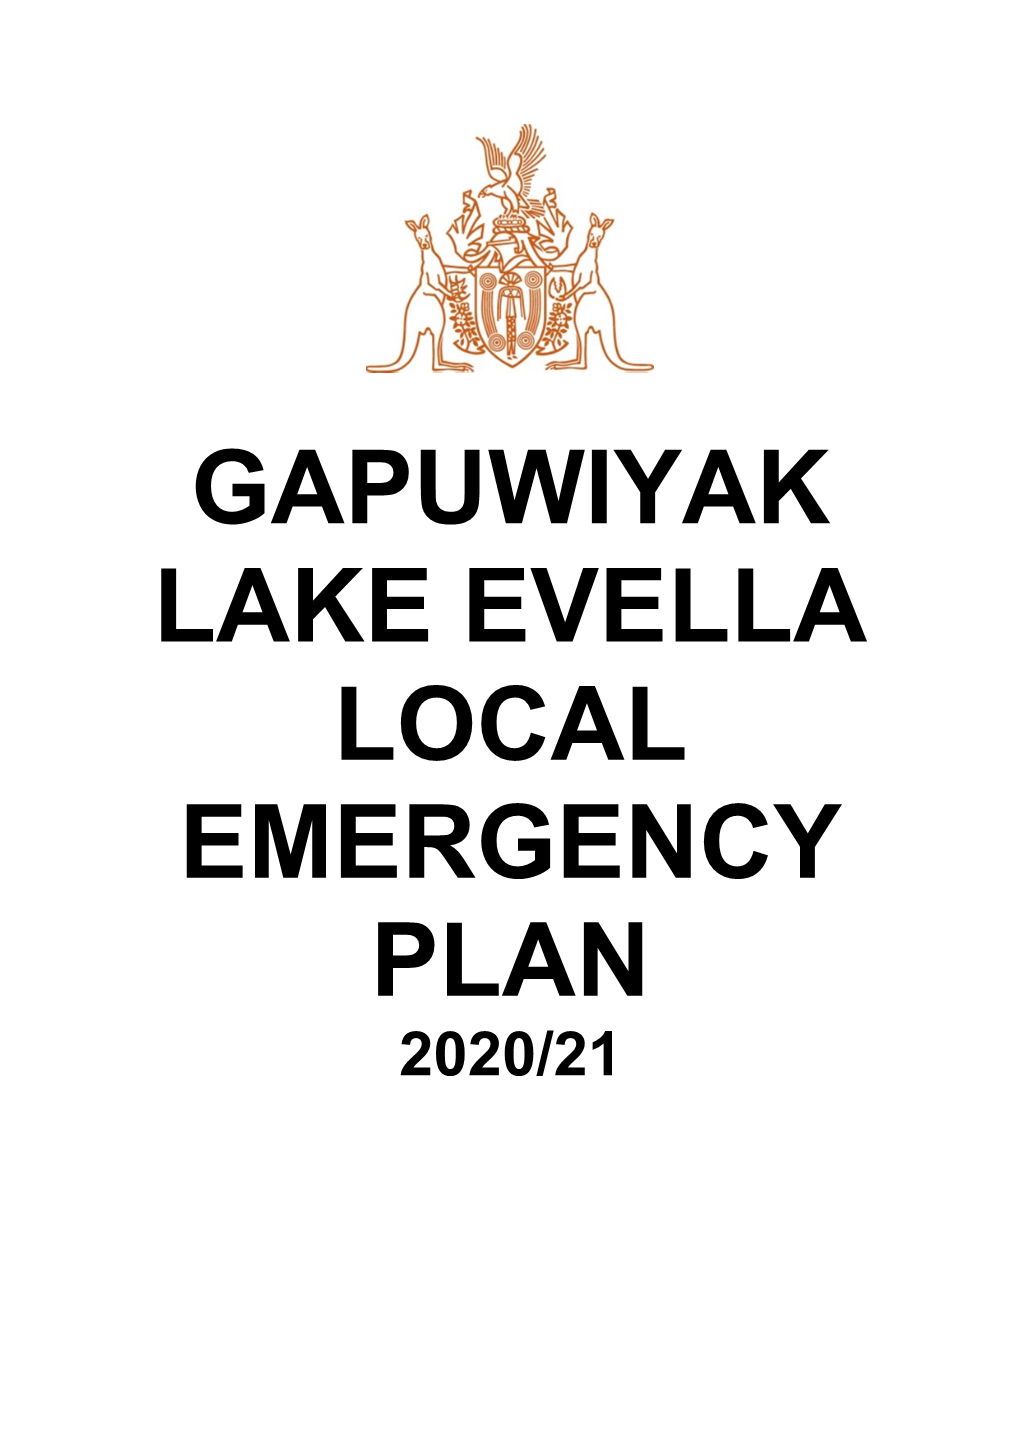 Gapuwiyak Lake Evella Local Emergency Plan 2020/21